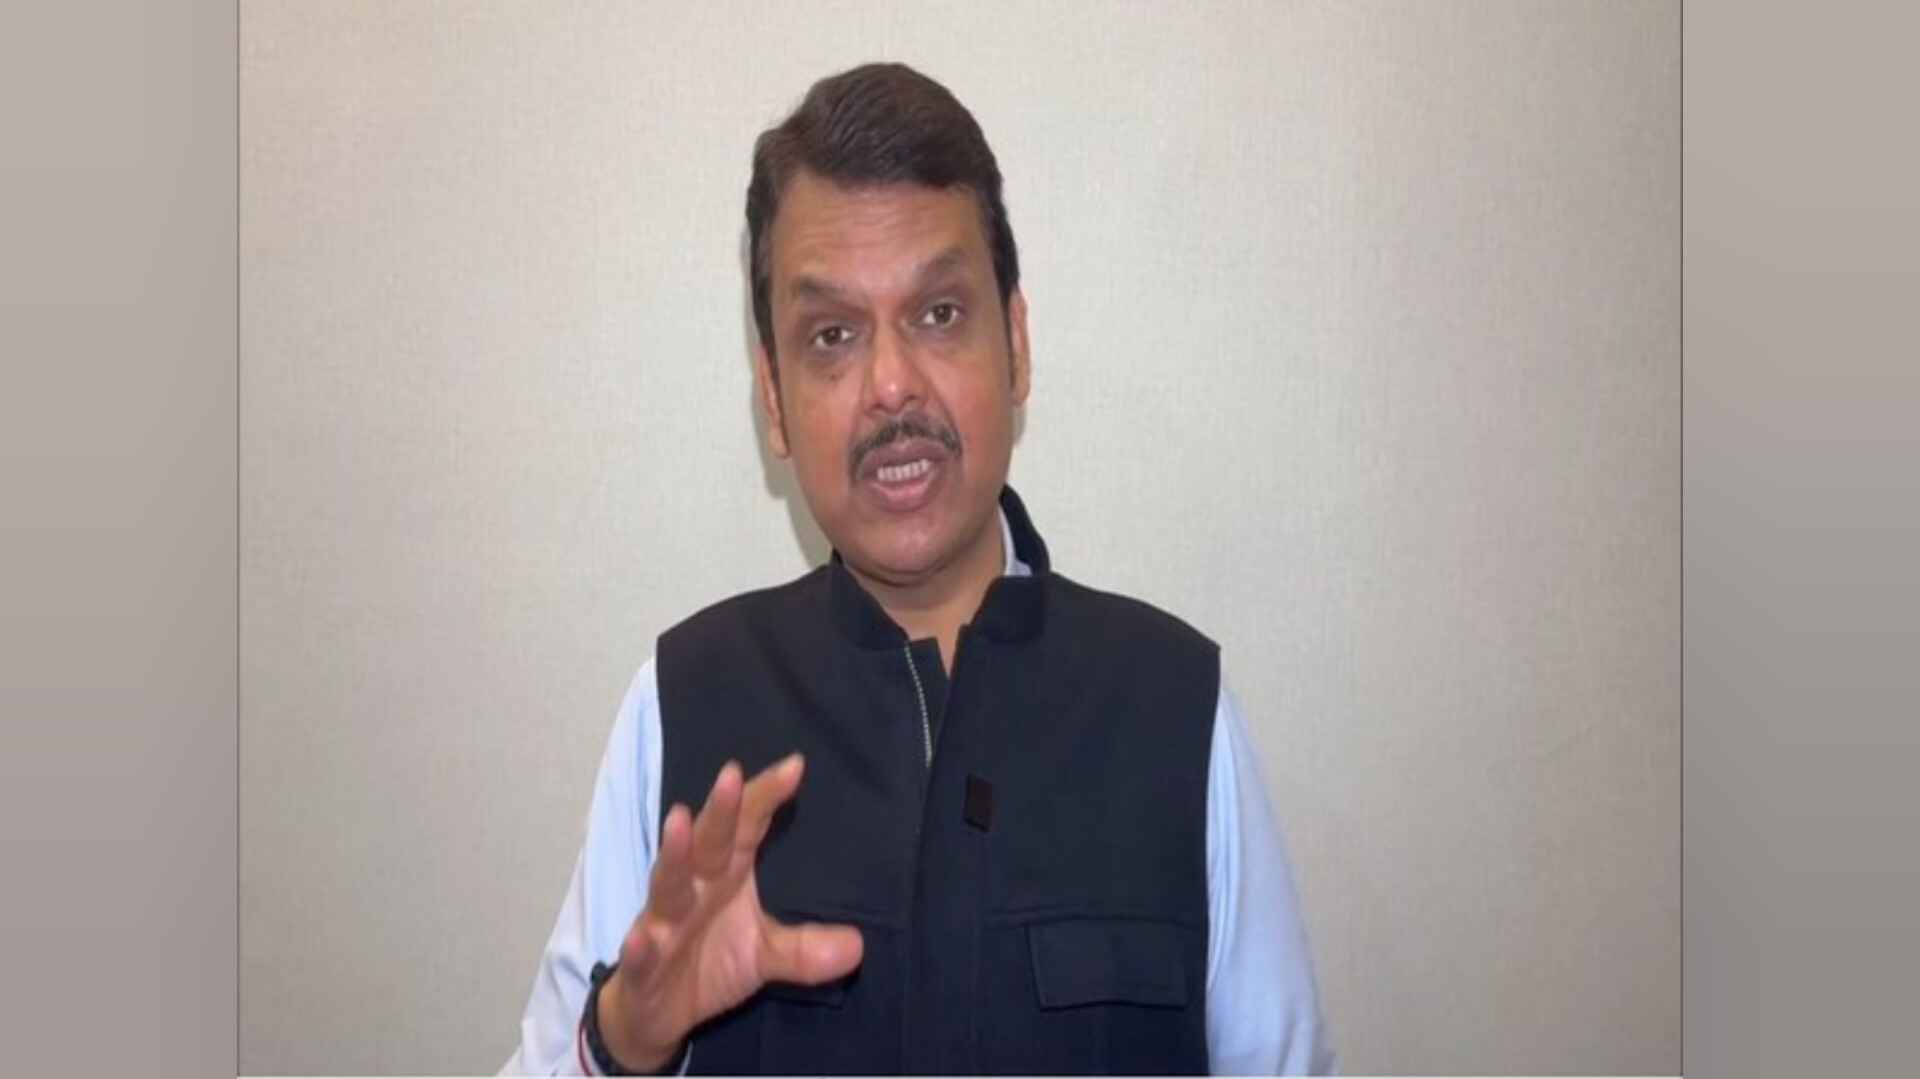 महाराष्ट्र के डिप्टी सीएम फड़णवीस का बयान, 'मंत्री छगन भुजबल का इस्तीफा स्वीकार नहीं'